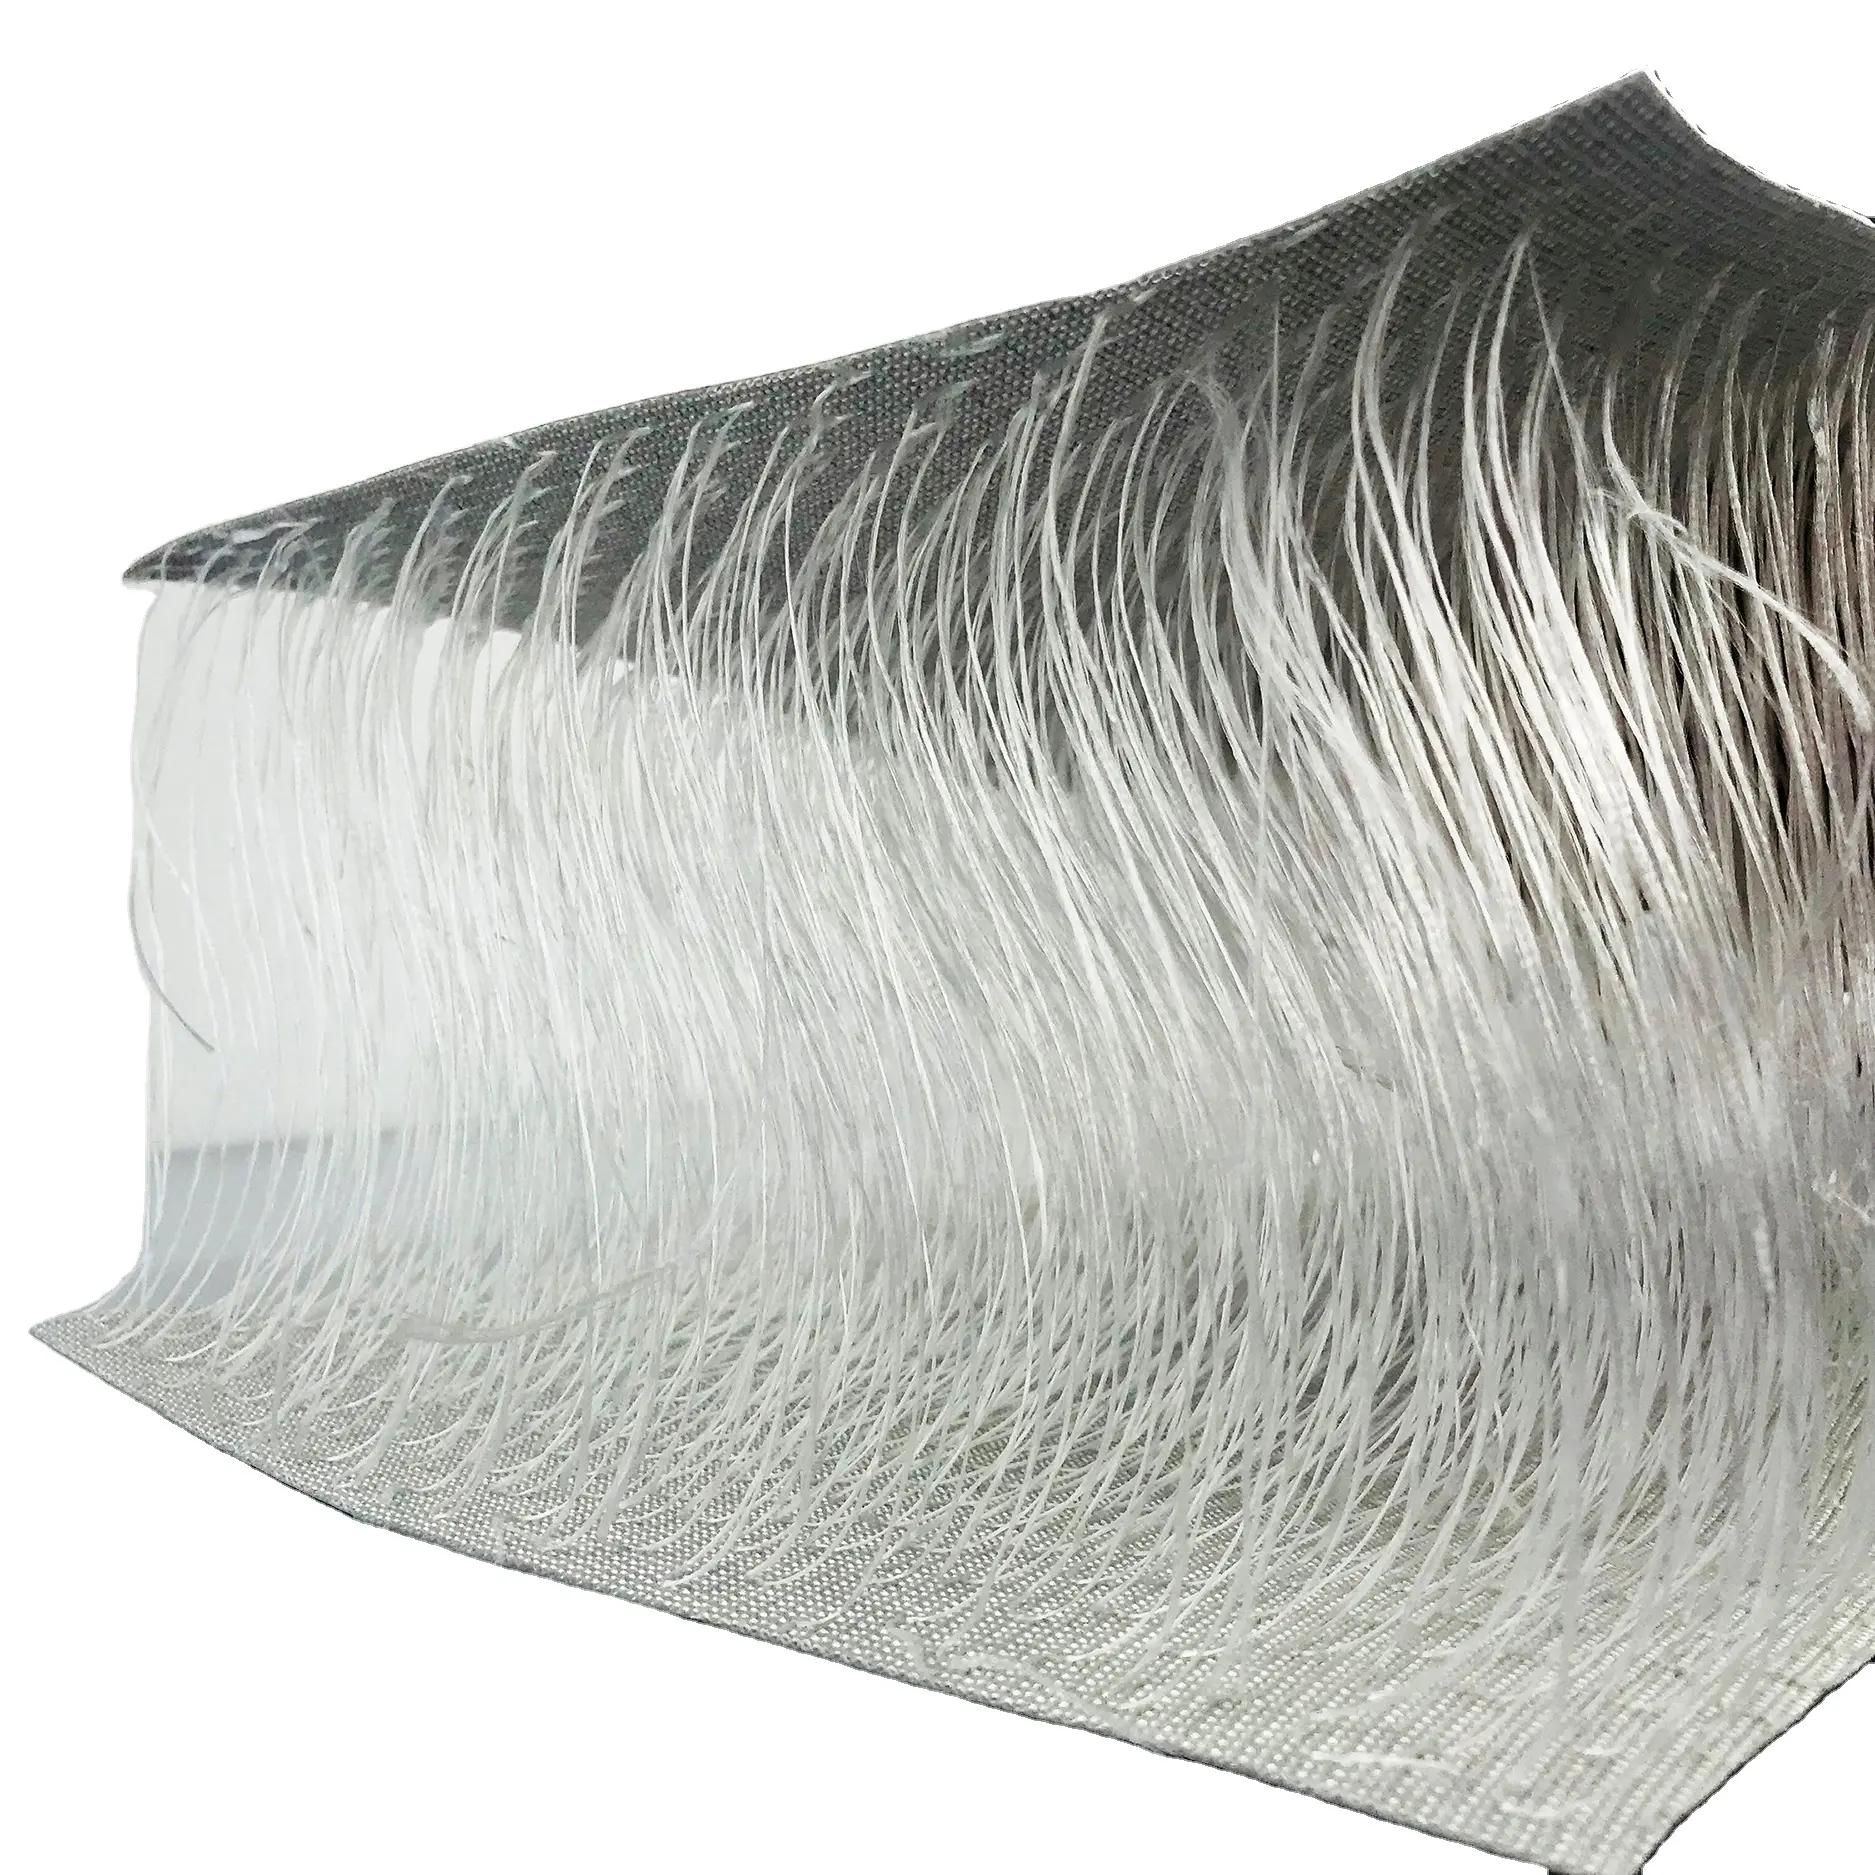 De aire inflable colchón de agua flexible tanque almohada y vertical de Flex de lona recubierta de PVC impermeable brillante y mate